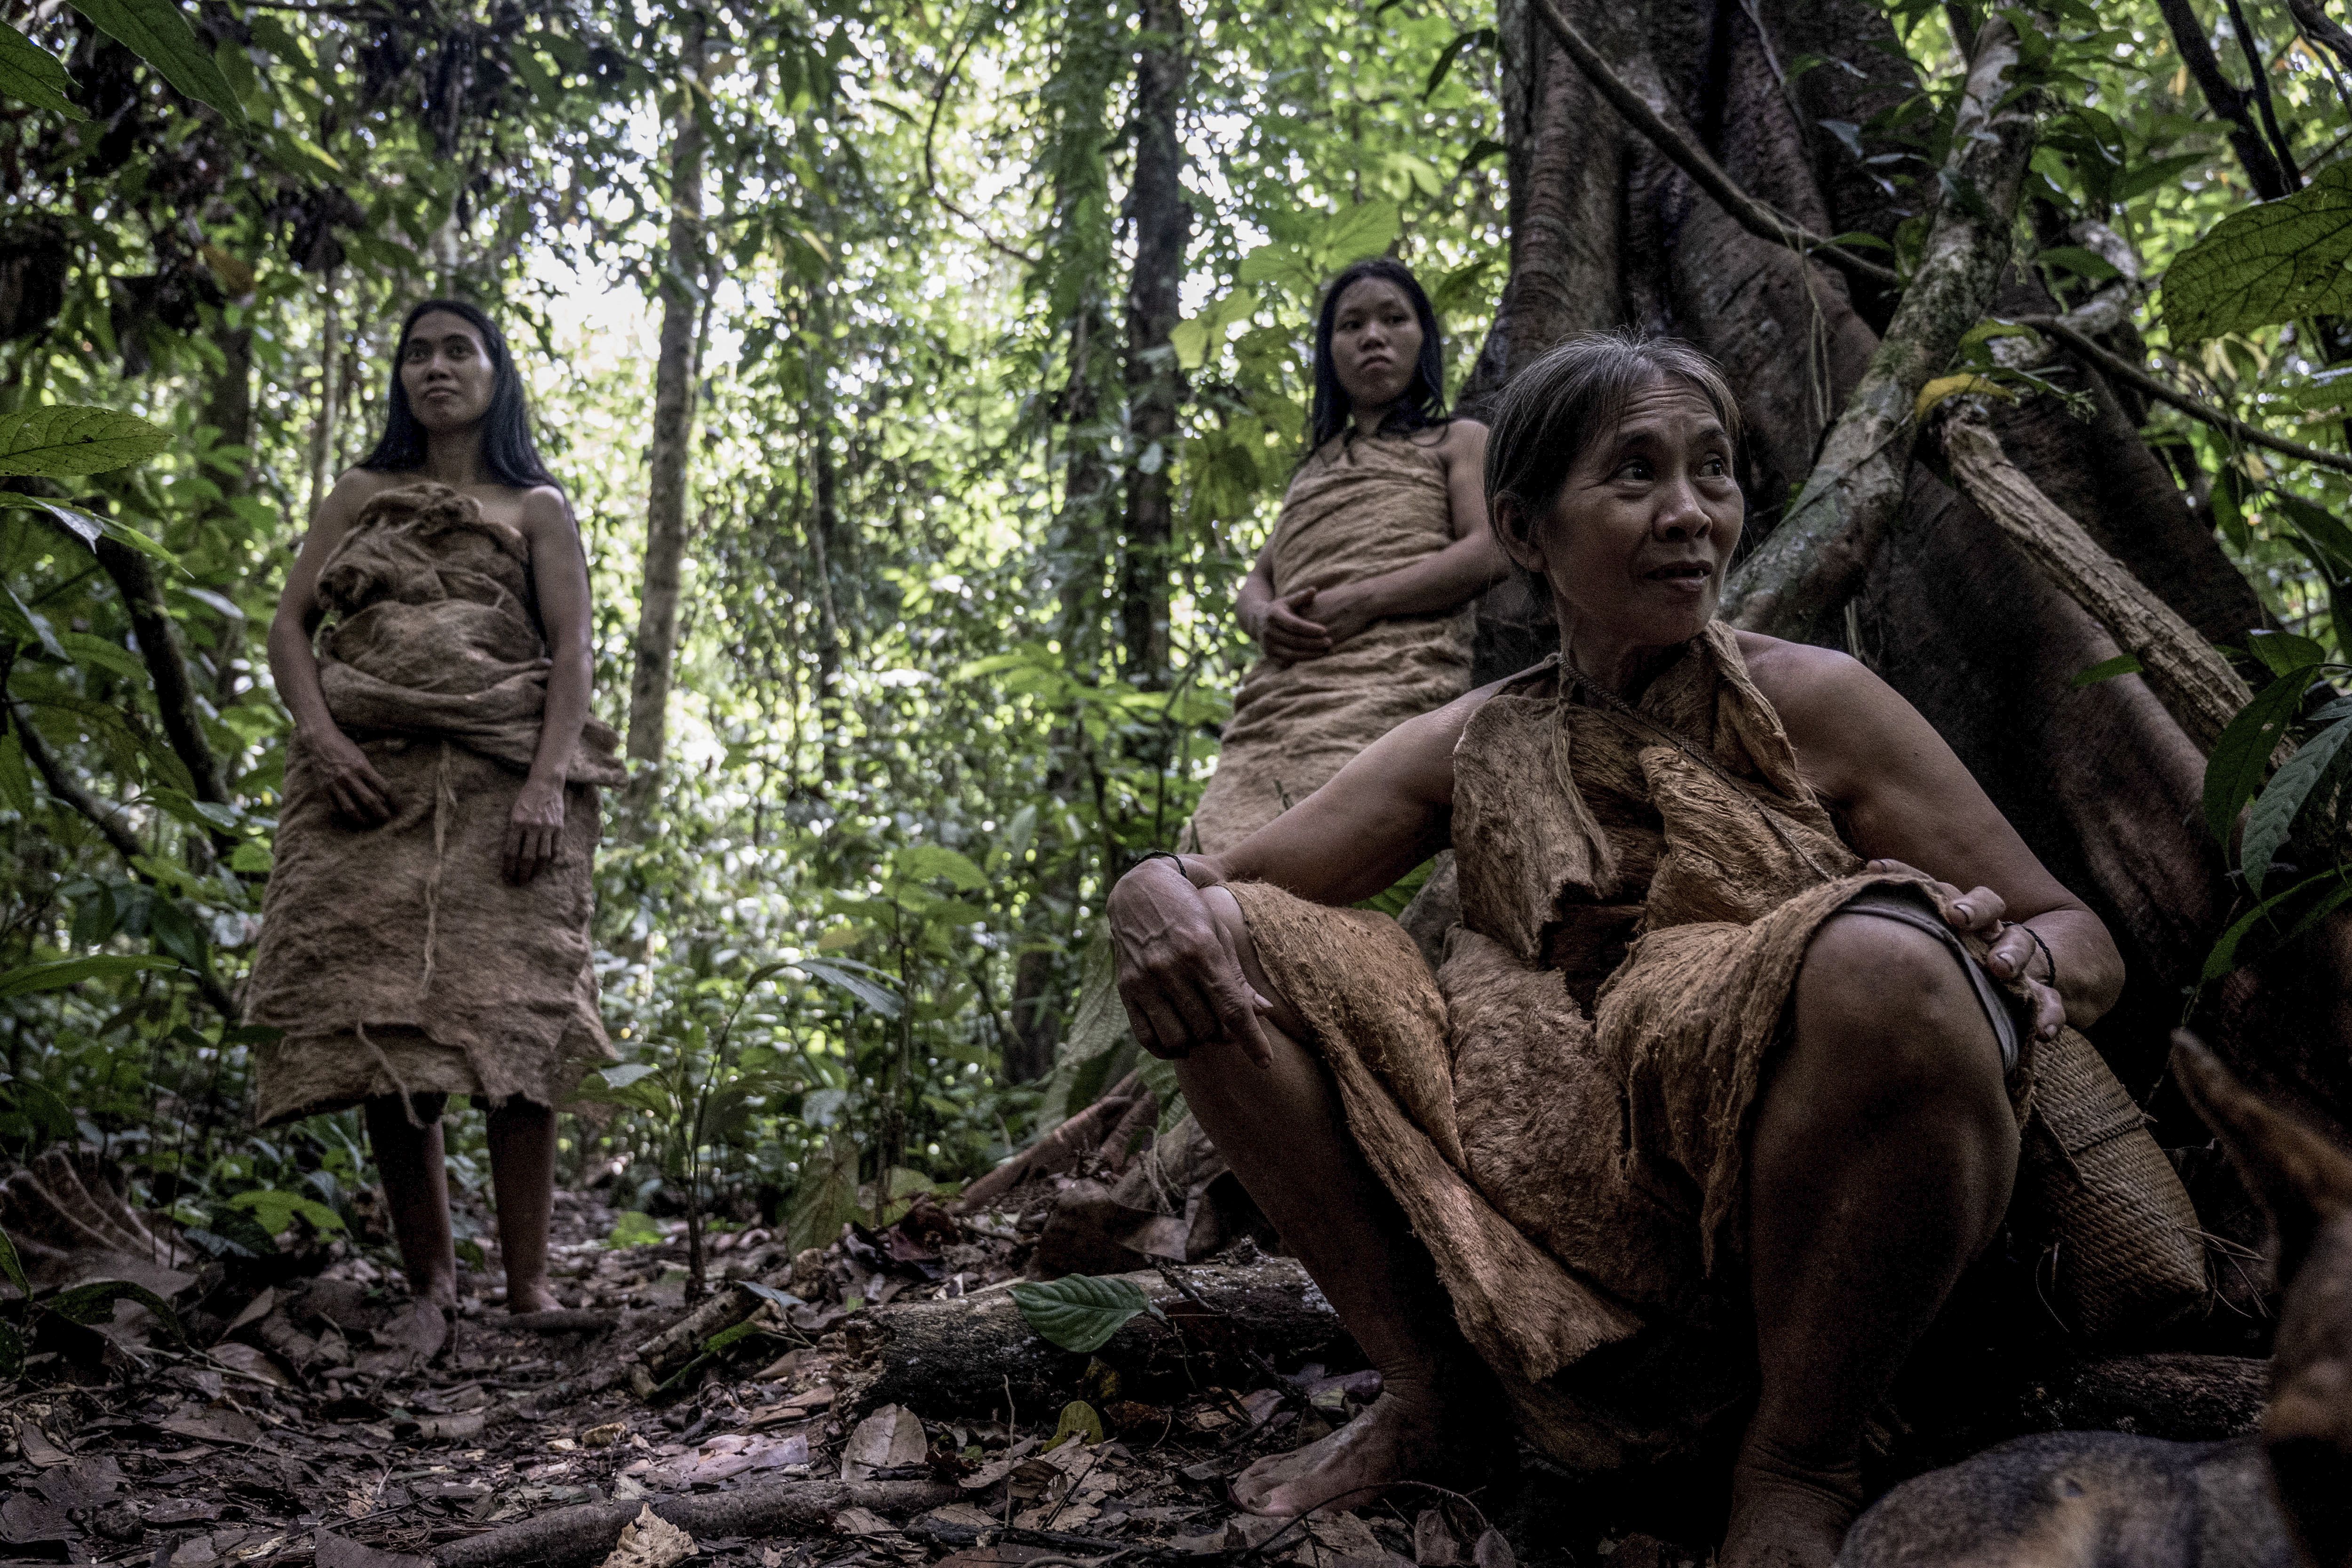 BERITA FOTO: Punan Batu, Suku Pemburu dan Peramu Terakhir di Kalimantan